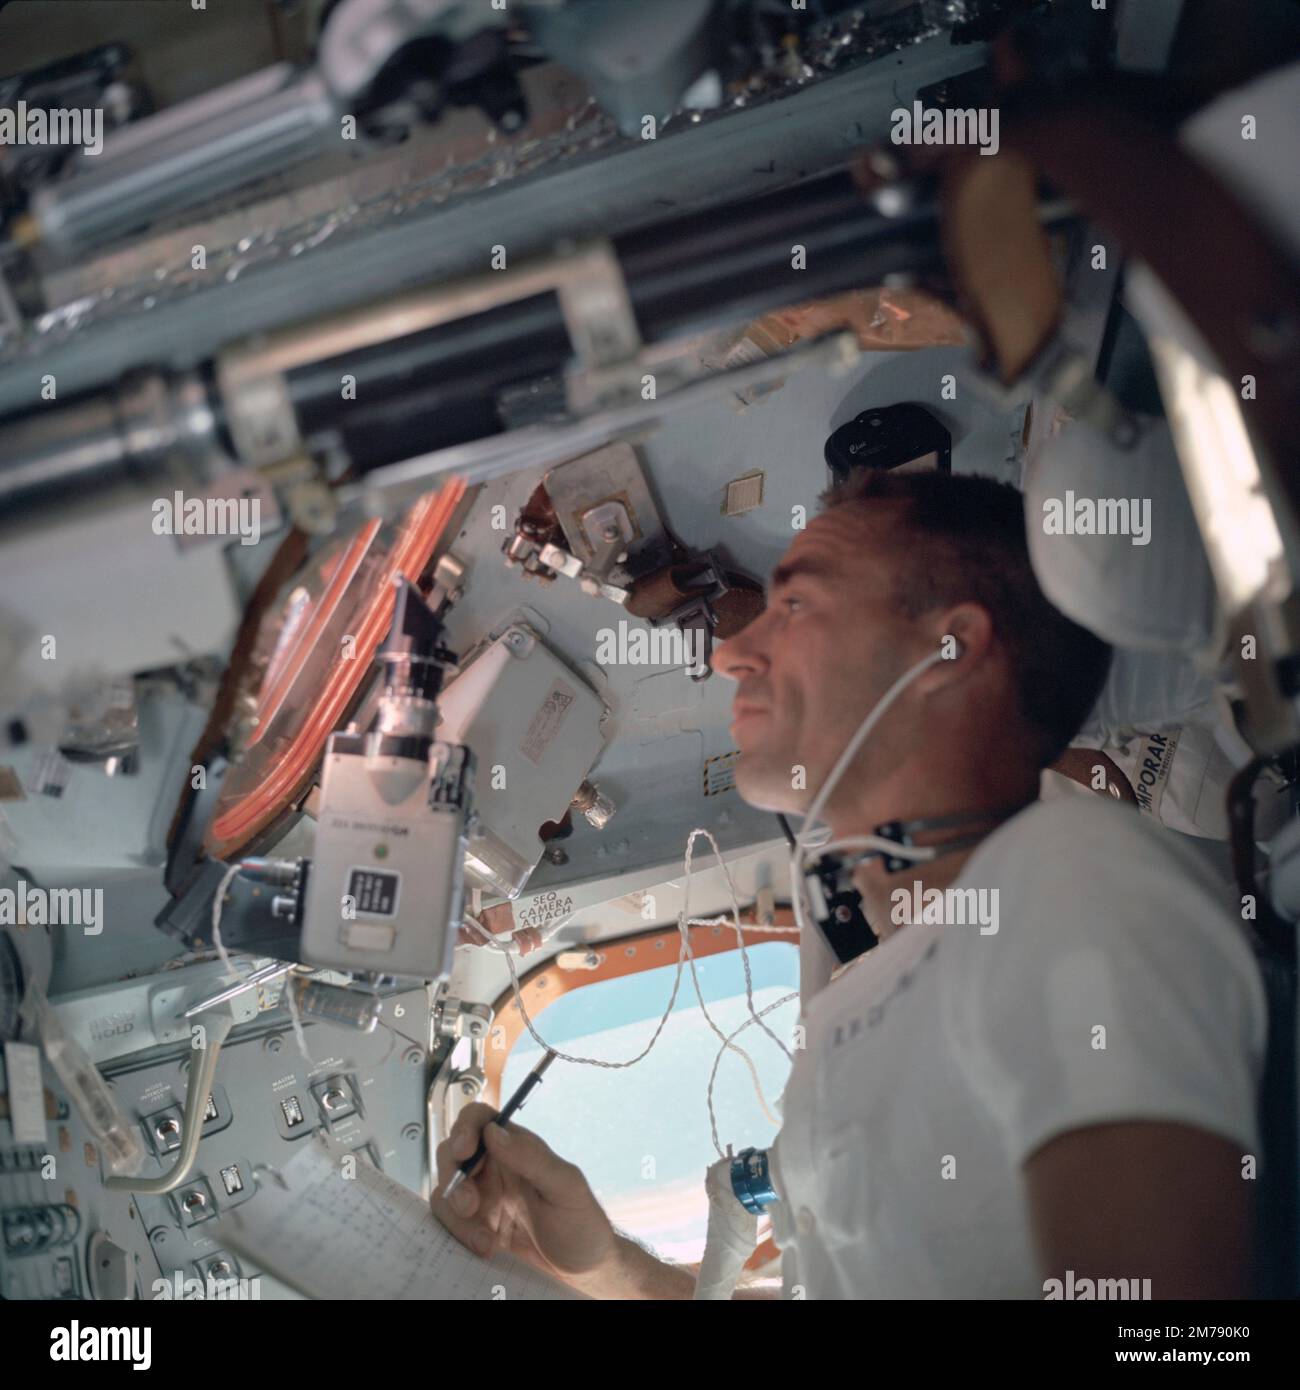 Orbite de la terre, orbite de la terre. 12 octobre 1968. L'astronaute Walter Cunningham de l'équipage principal Apollo VII de la NASA, au cours du deuxième jour de vol dans la capsule Apollo, 12 octobre 1968 dans l'orbite terrestre. Cunningham meurt 4 janvier 2023 à l'âge de 90 ans, le dernier membre survivant de la mission Apollo 7 de la NASA. Banque D'Images